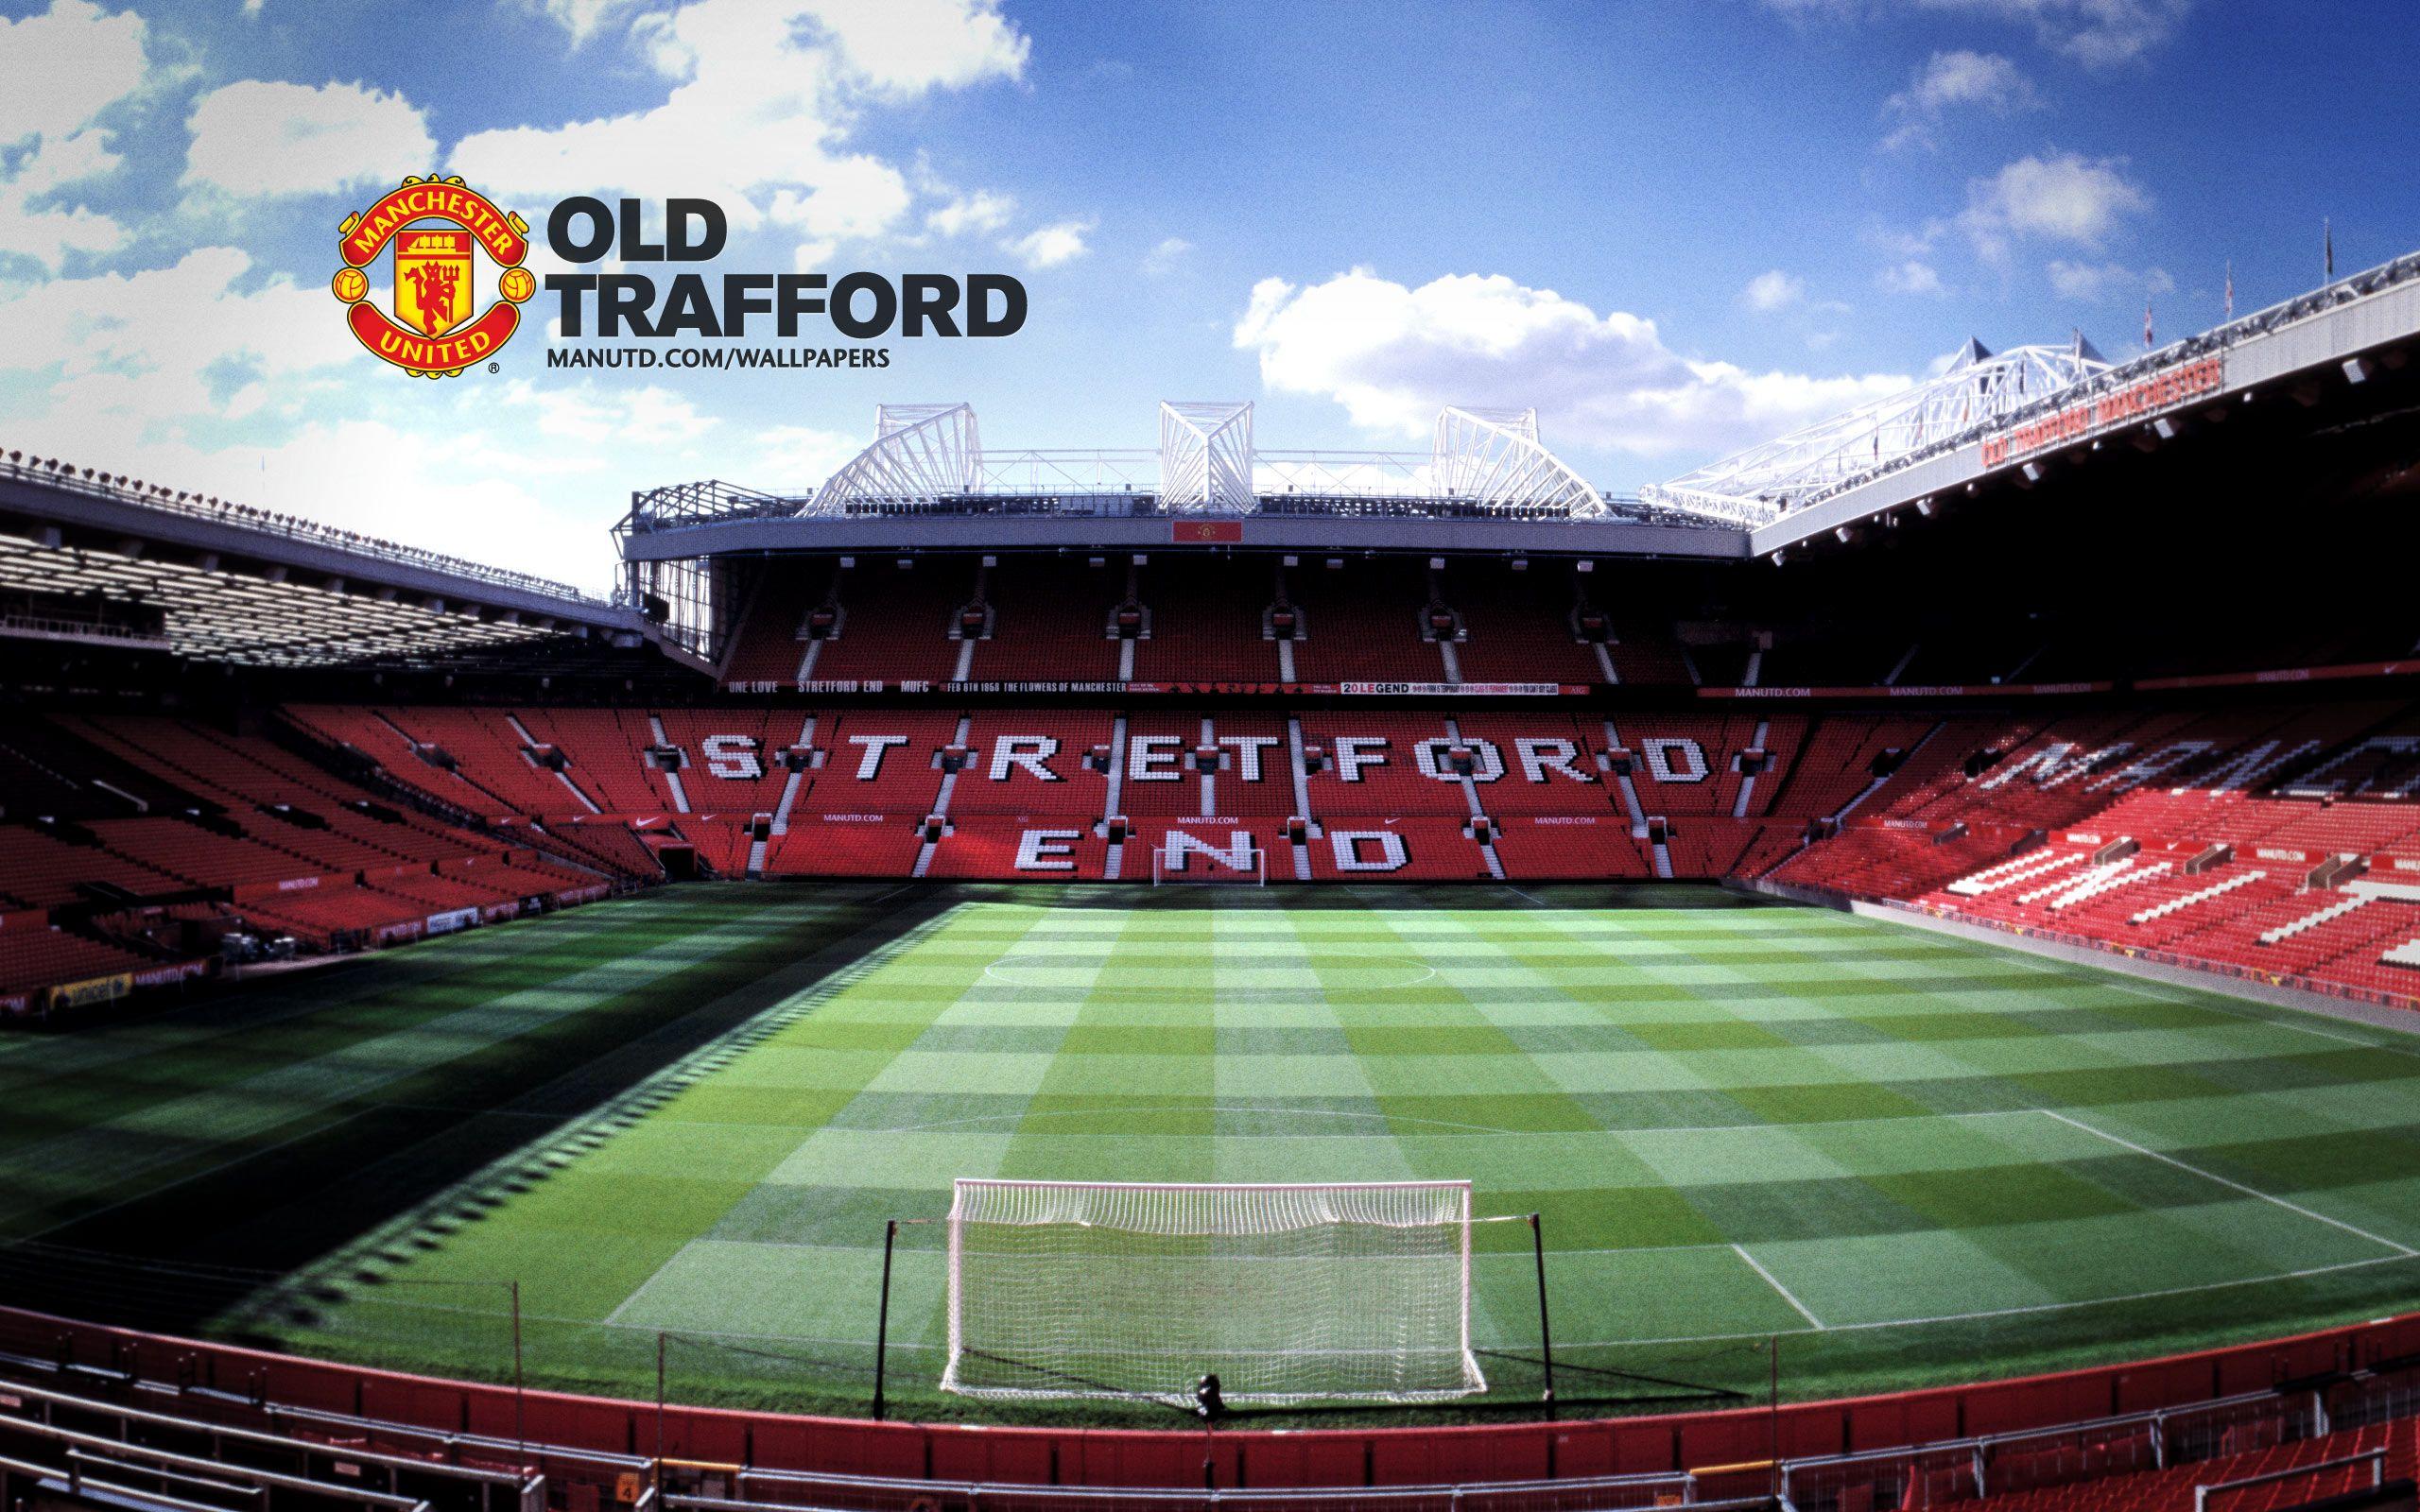 Mang đến cho bạn cơ hội được đắm mình trong không gian của sân Old Trafford của đội bóng Manchester United. Hình nền sân bóng mang đậm tính biểu tượng với những dòng chữ lóng lánh chào đón bạn đến với thế giới bóng đá huyền thoại.